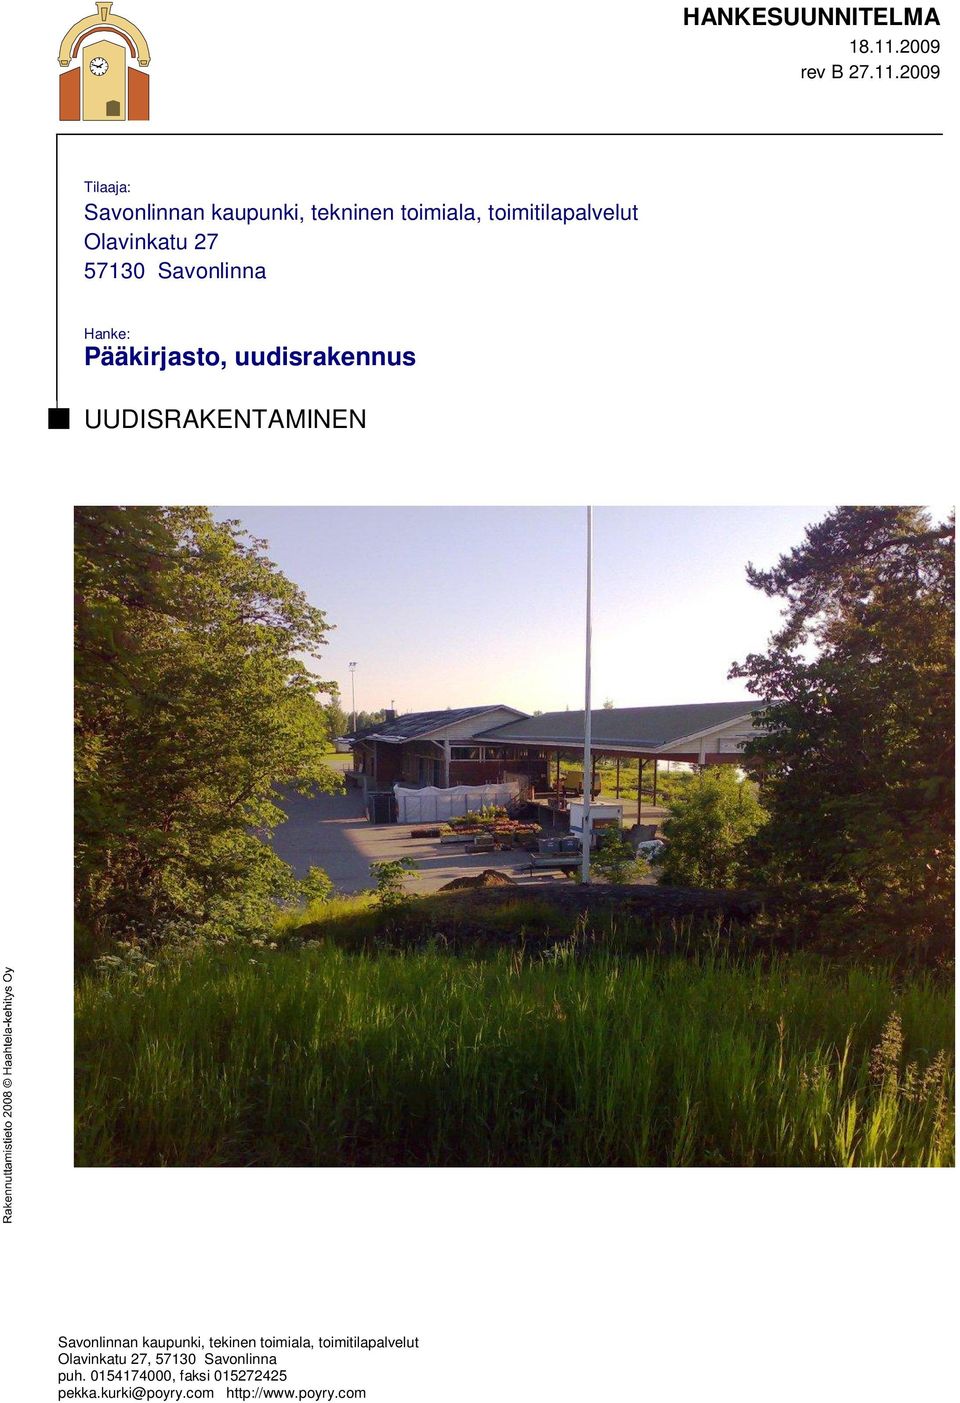 2009 Tilaaja: Savonlinnan kaupunki, tekninen toimiala, toimitilapalvelut Olavinkatu